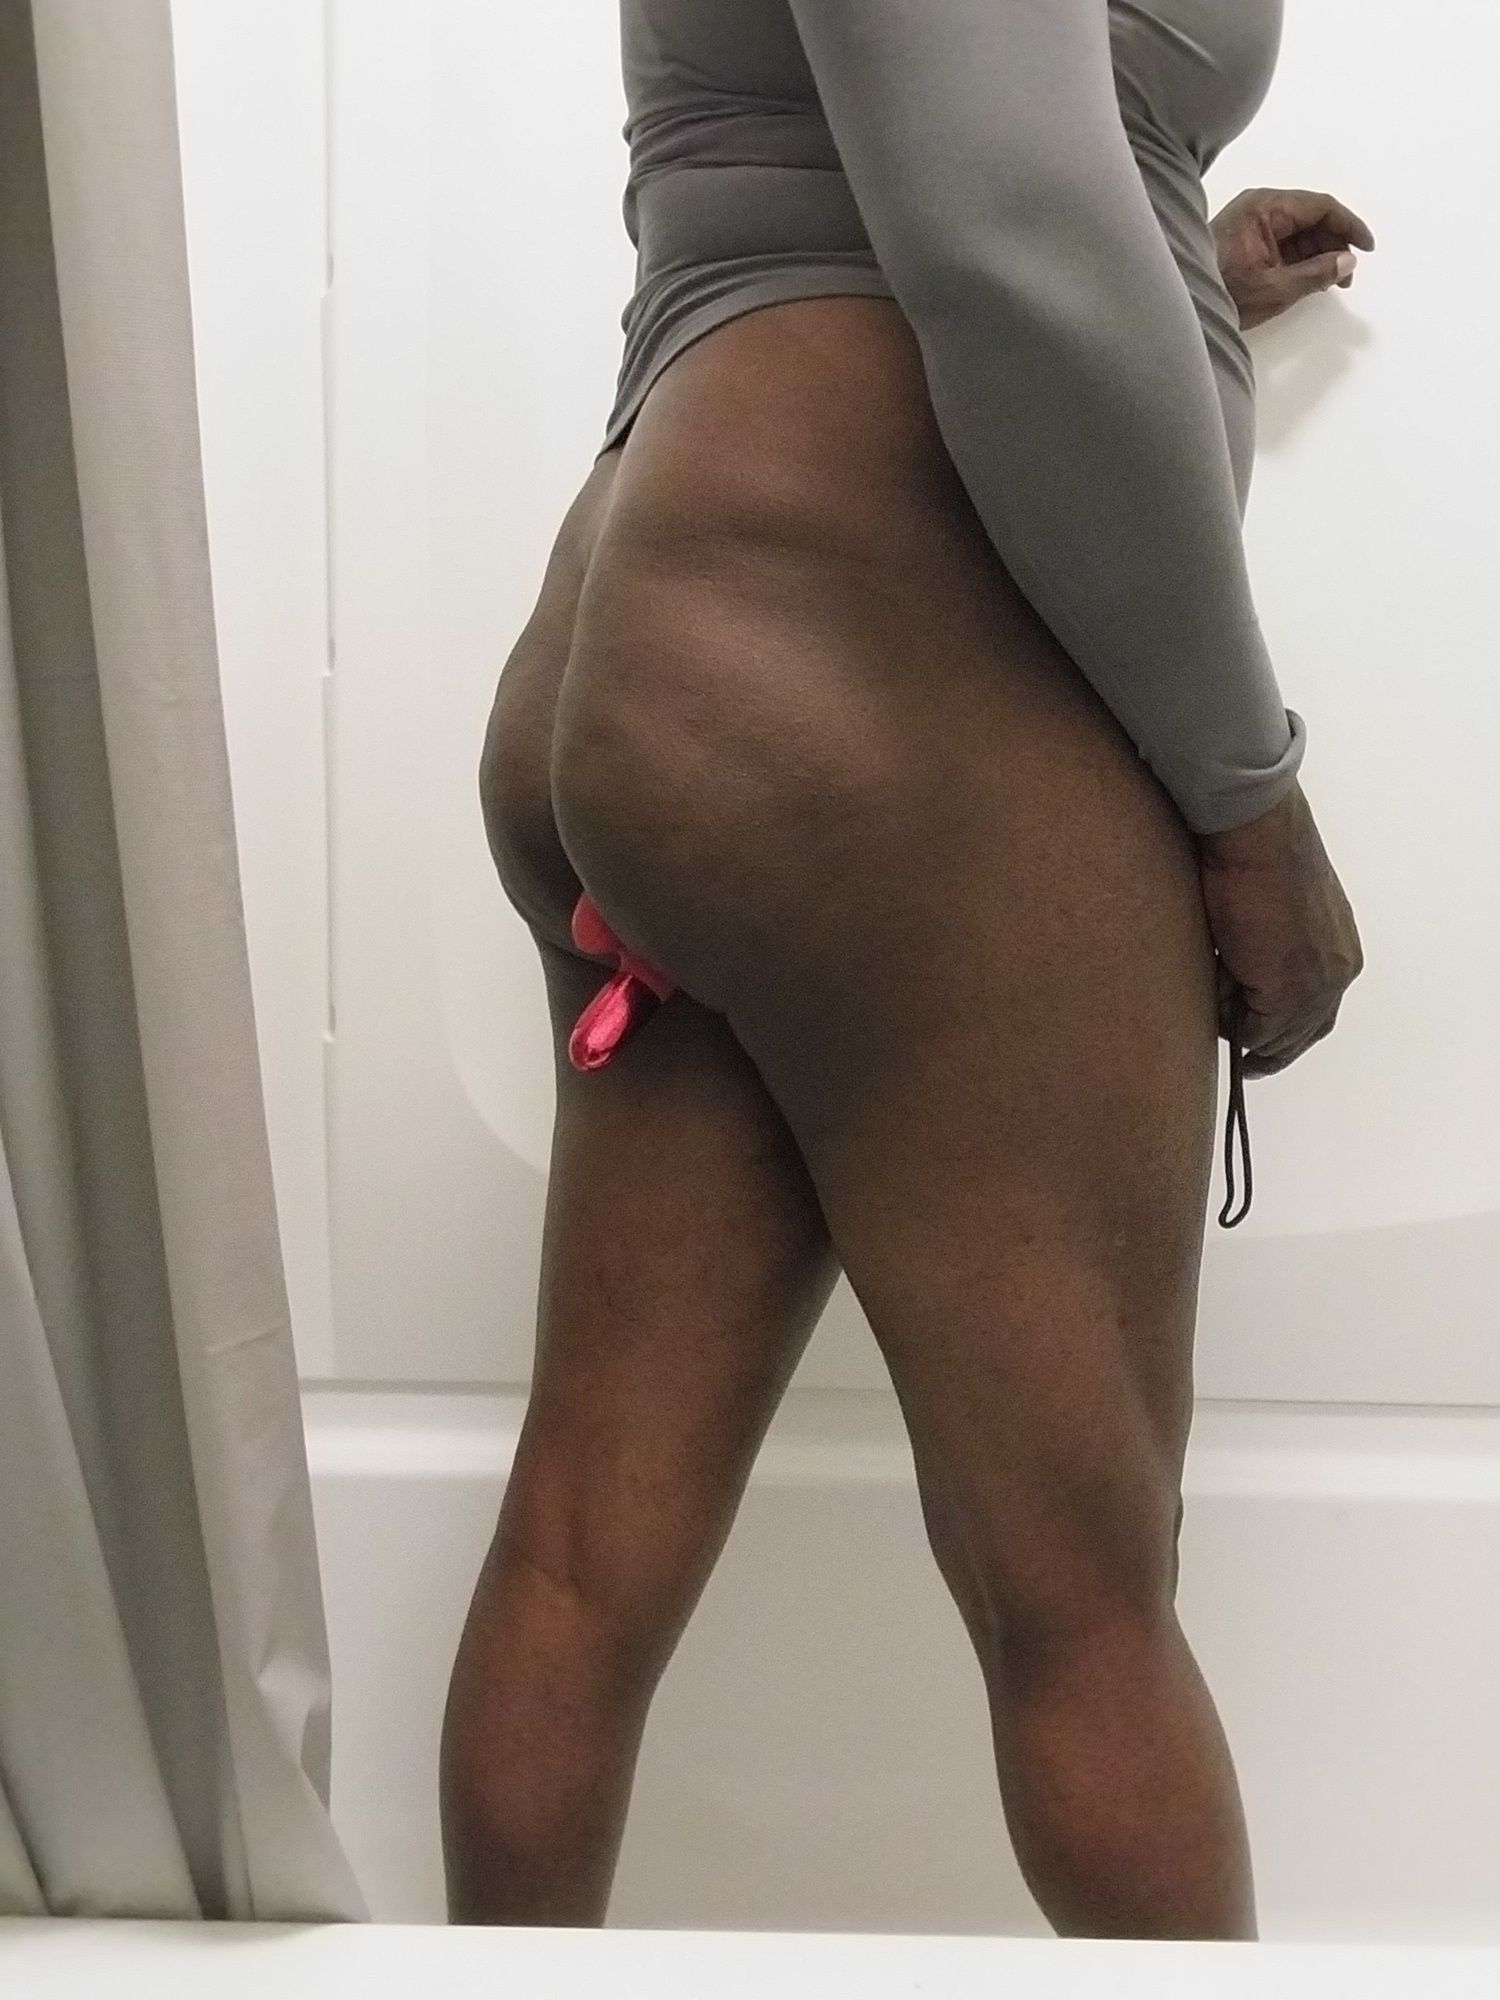 Fat black ass pink dildo  #3